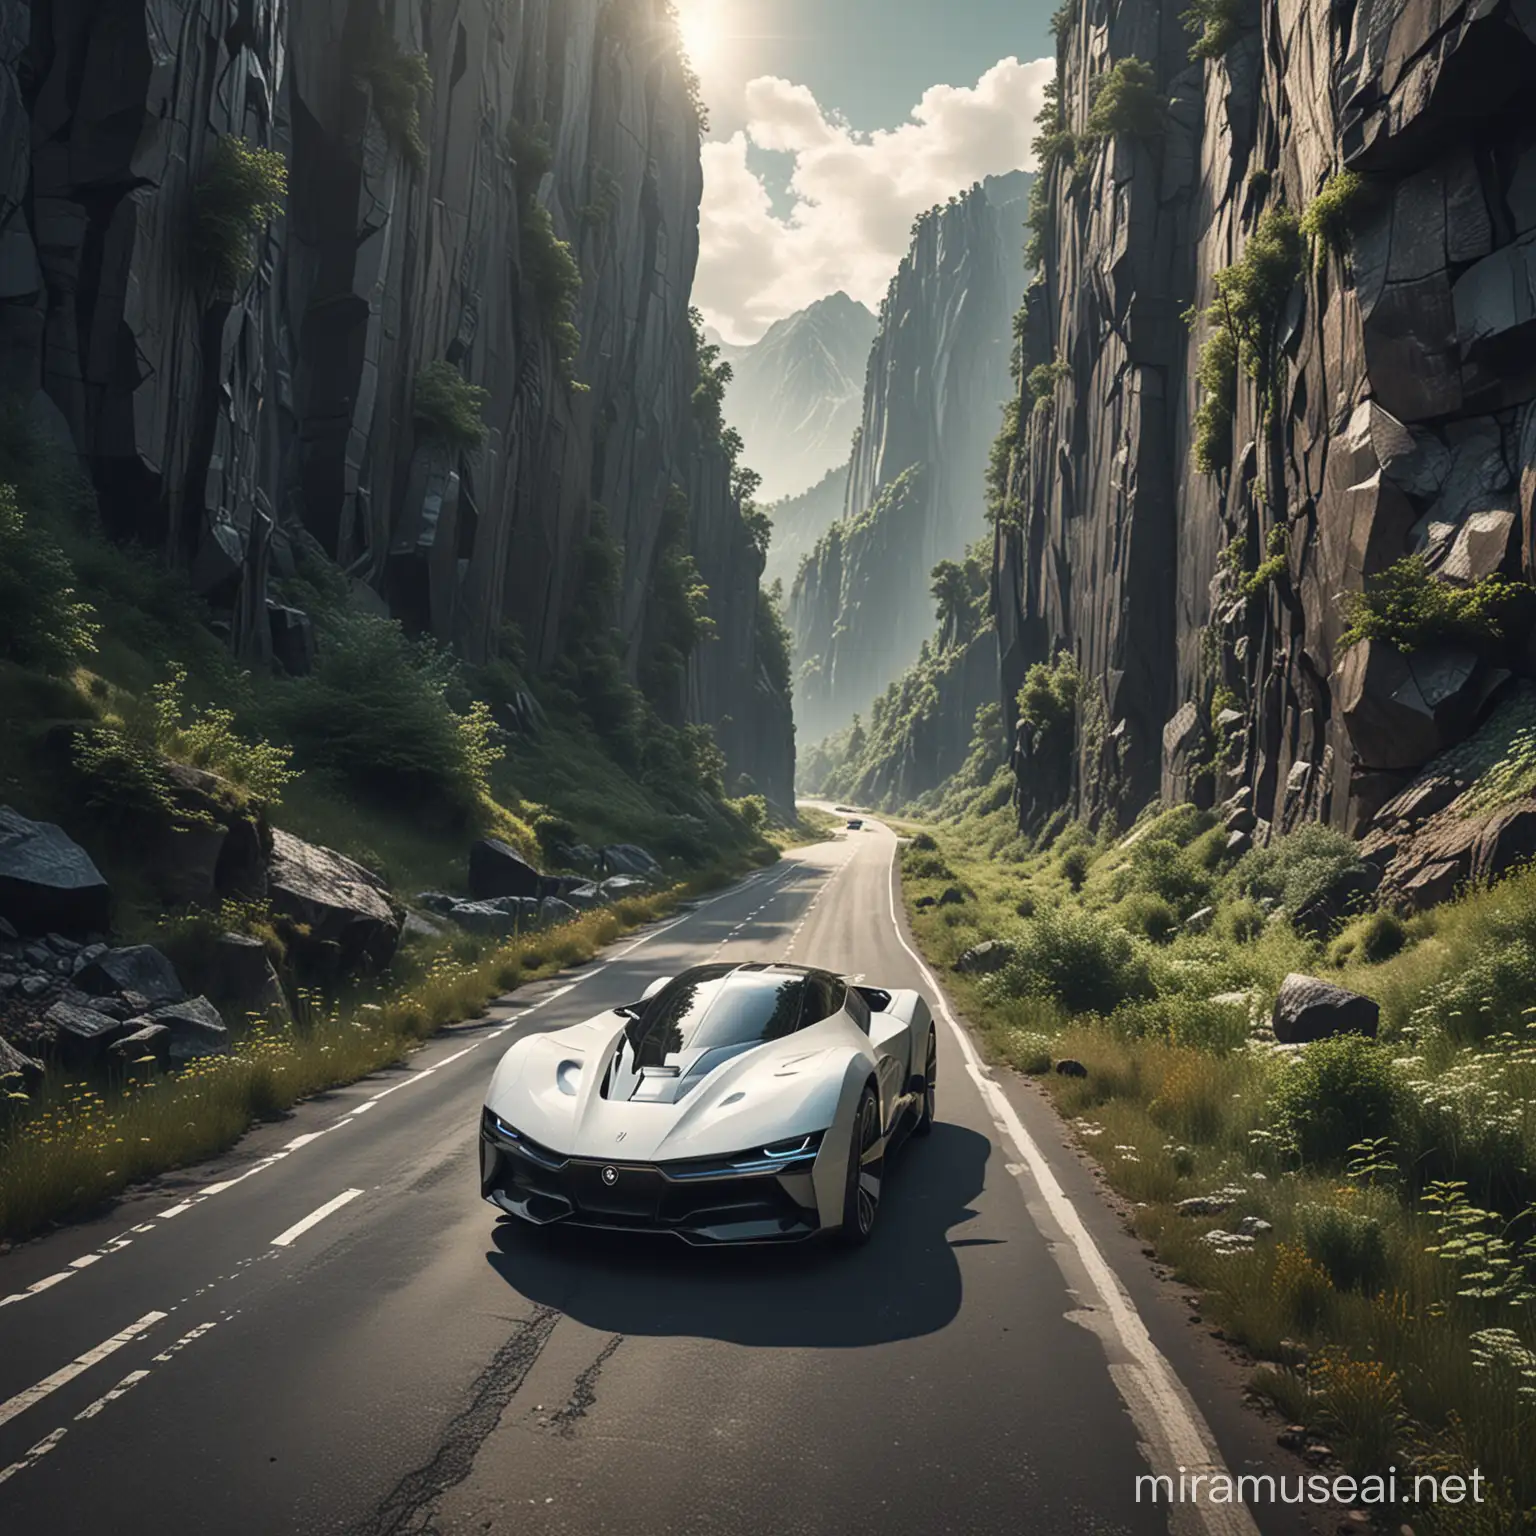 Futuristic Car Driving Through Scenic Mountain Landscape